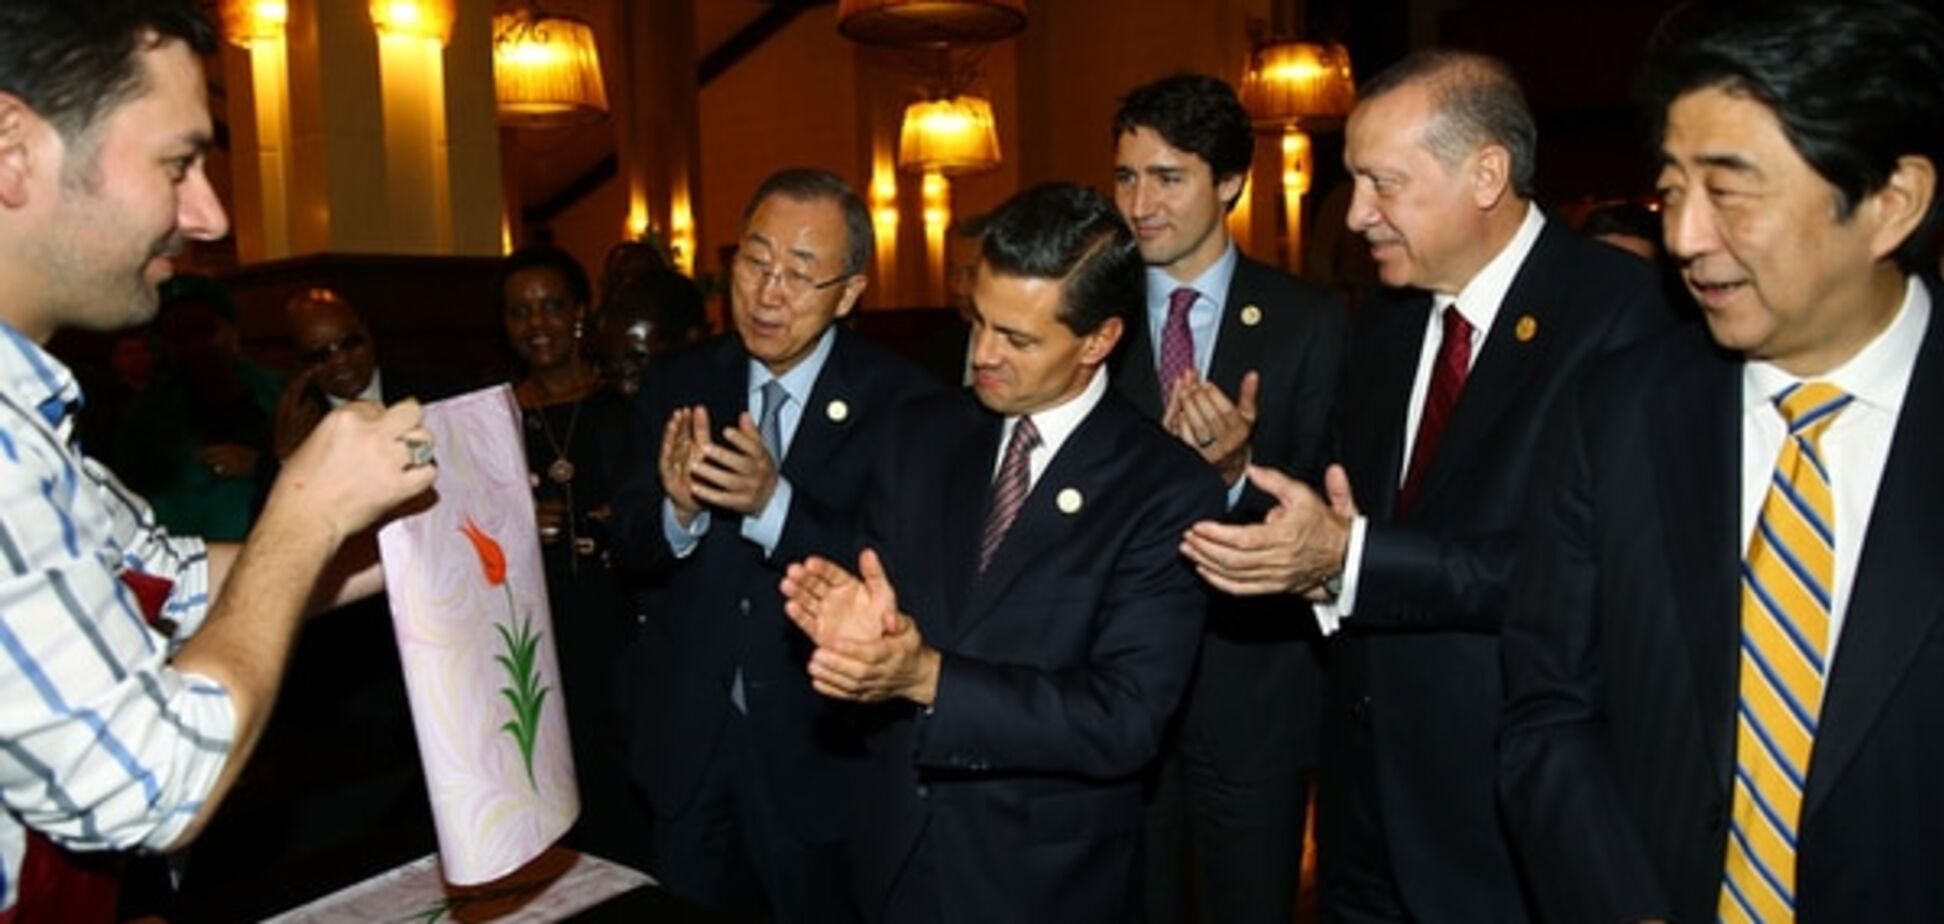 Кредиты МВФ, беженцы и терроризм: в Турции стартовал саммит G20 